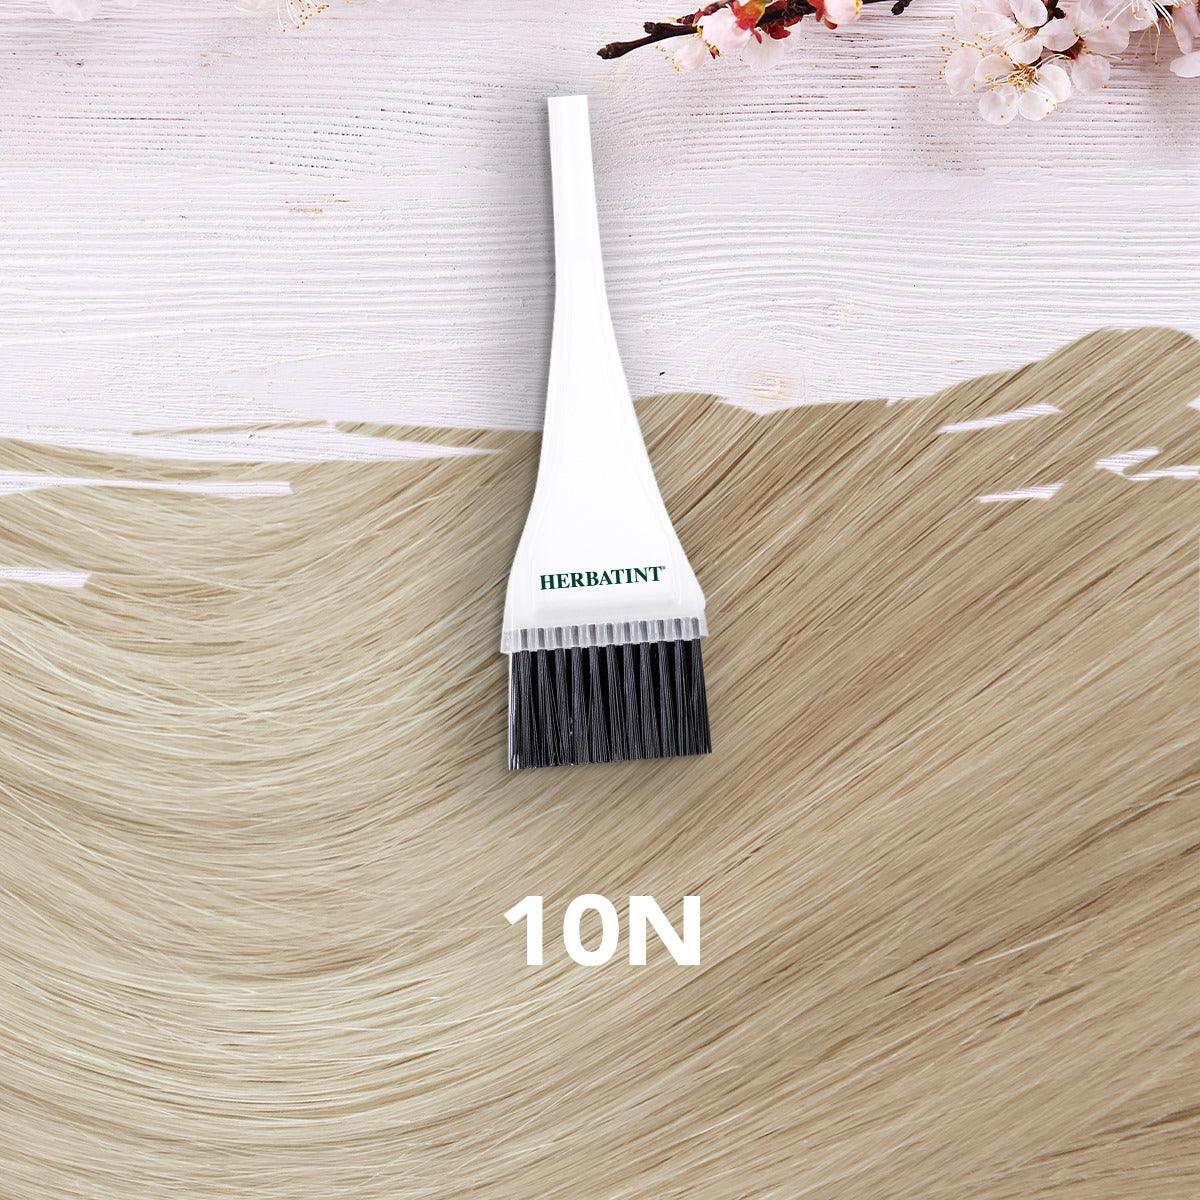 צבע טבעי לשיער גוון בלונד פלטינה 10N | הרבטינט - Herbatint - פריקפוא